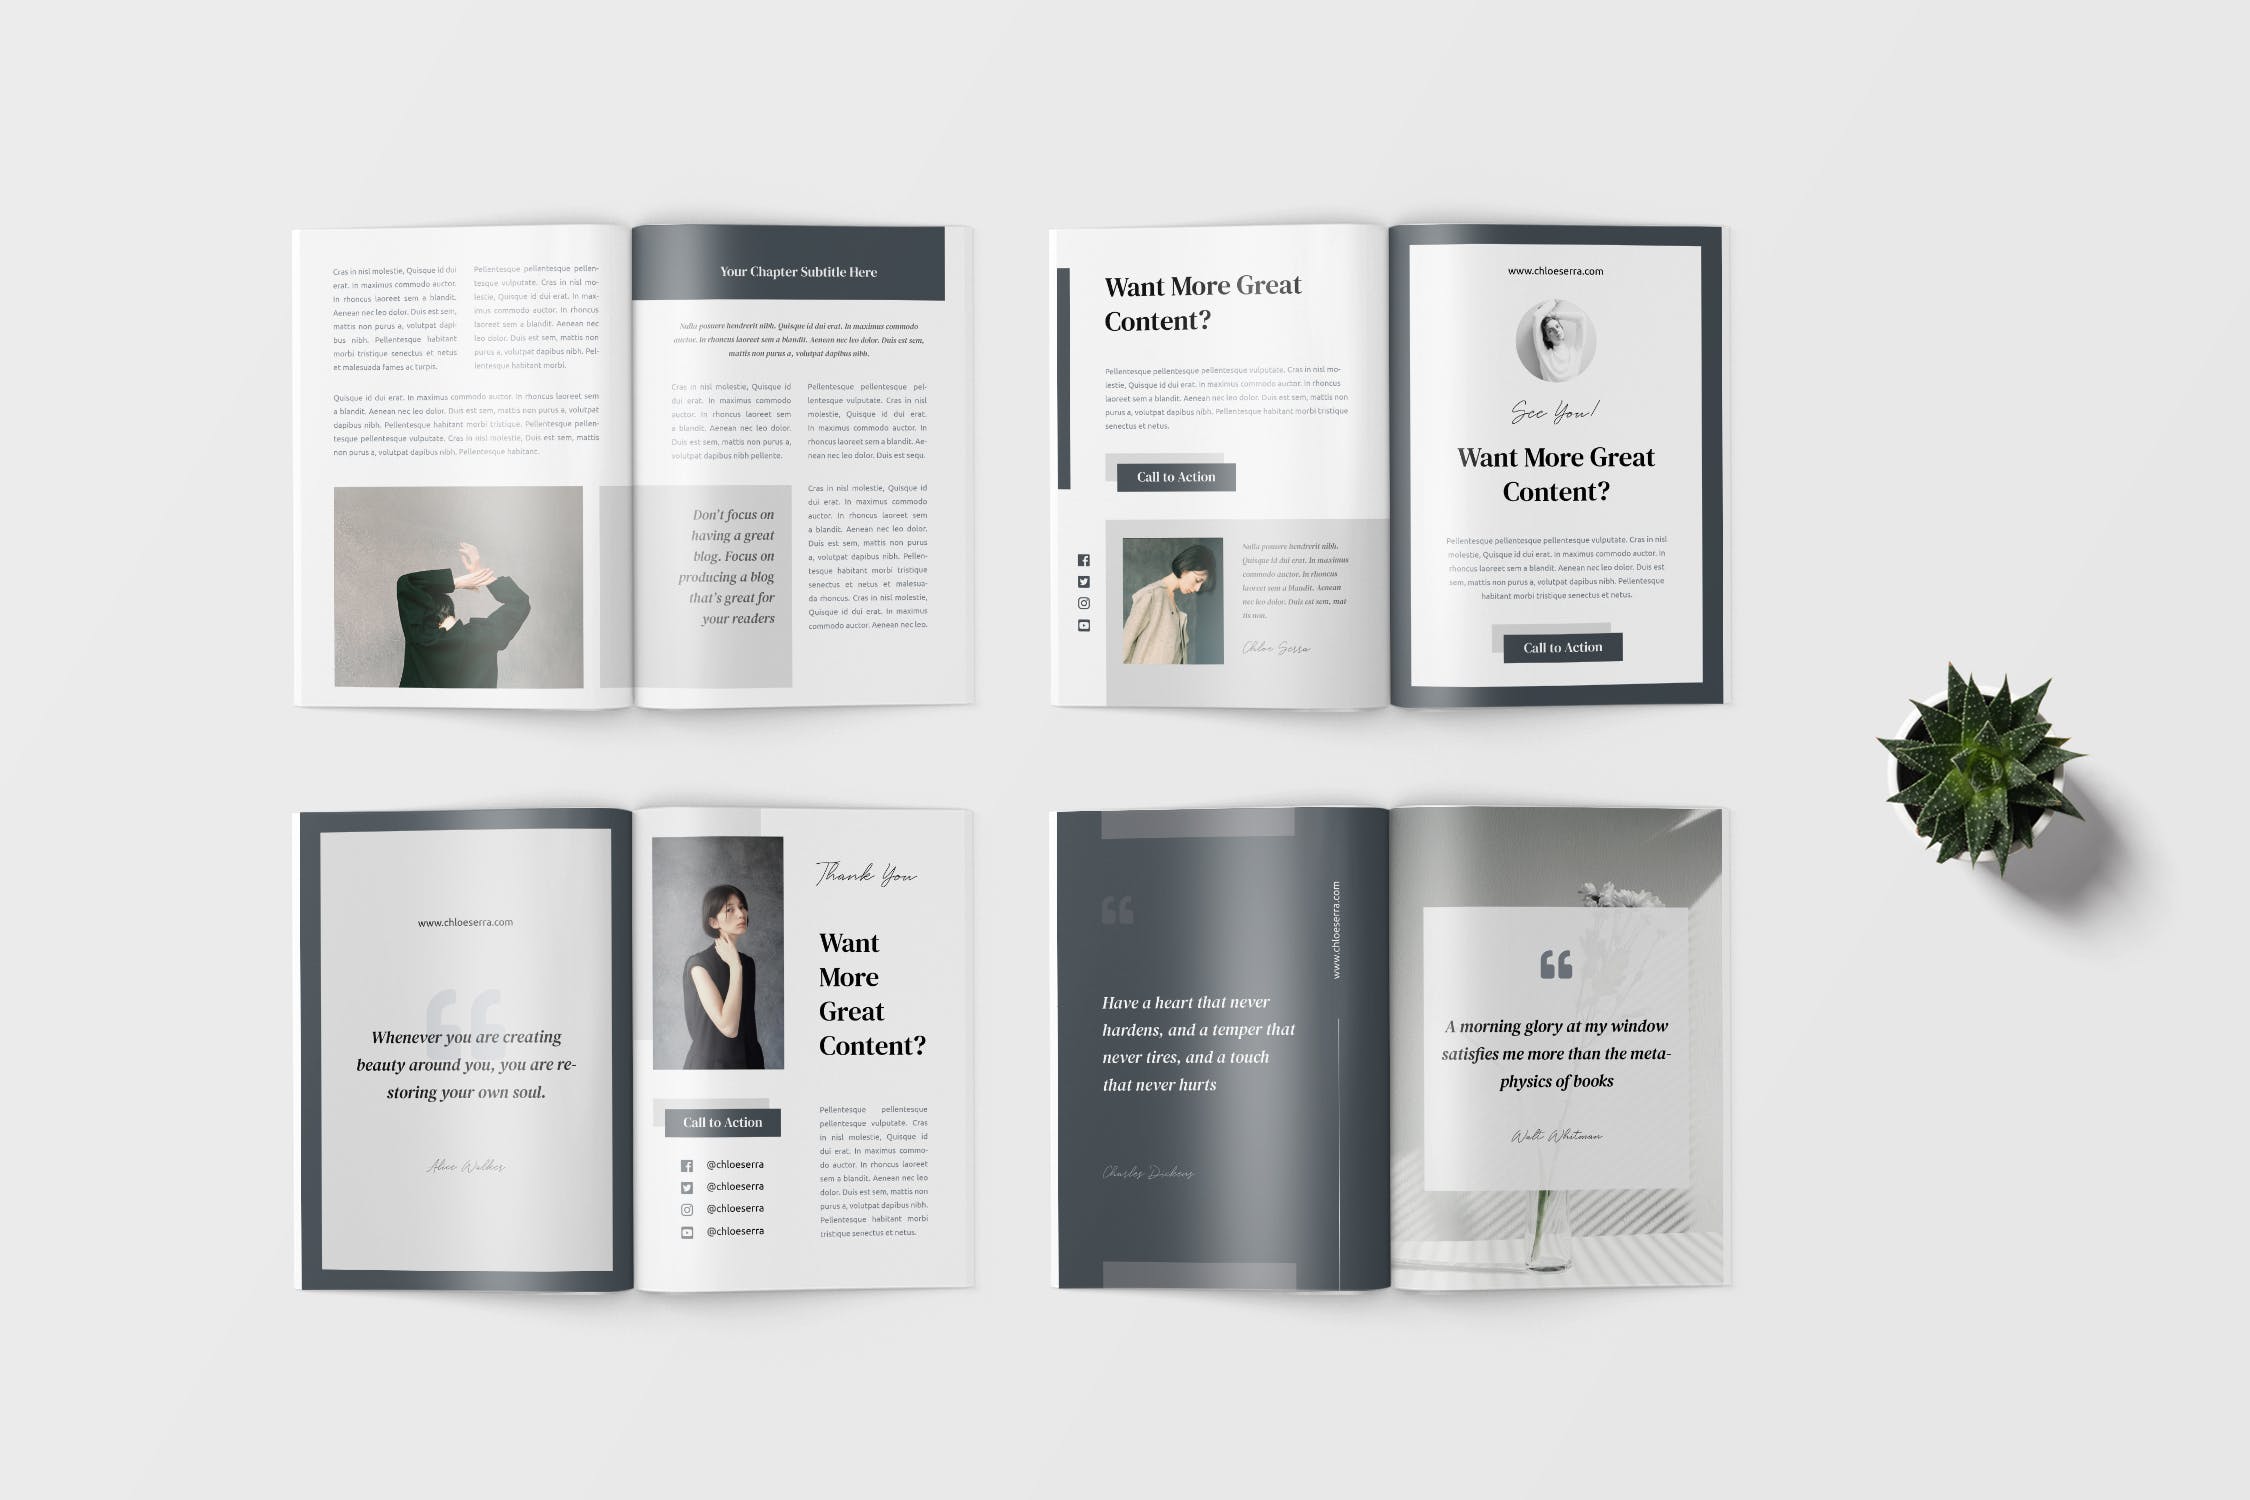 极简设计风格电子书/工作手册设计模板 Minimalist eBook / Workbook Template插图(2)